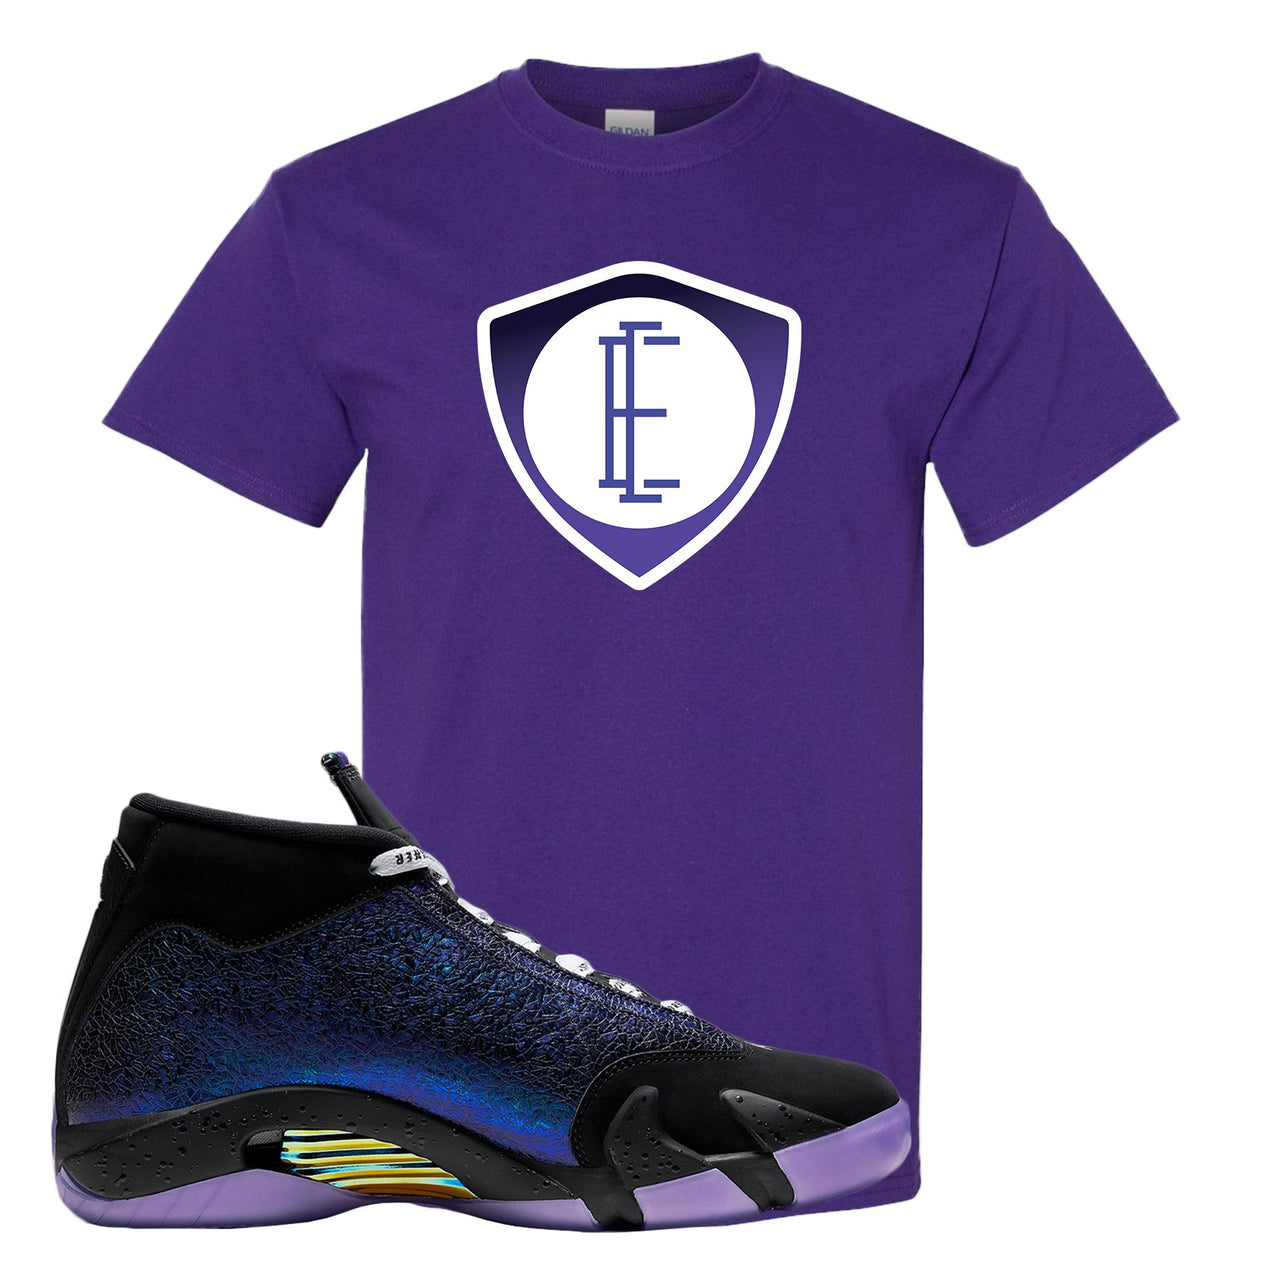 Doernbecher 14s T Shirt | E Shield, Purple